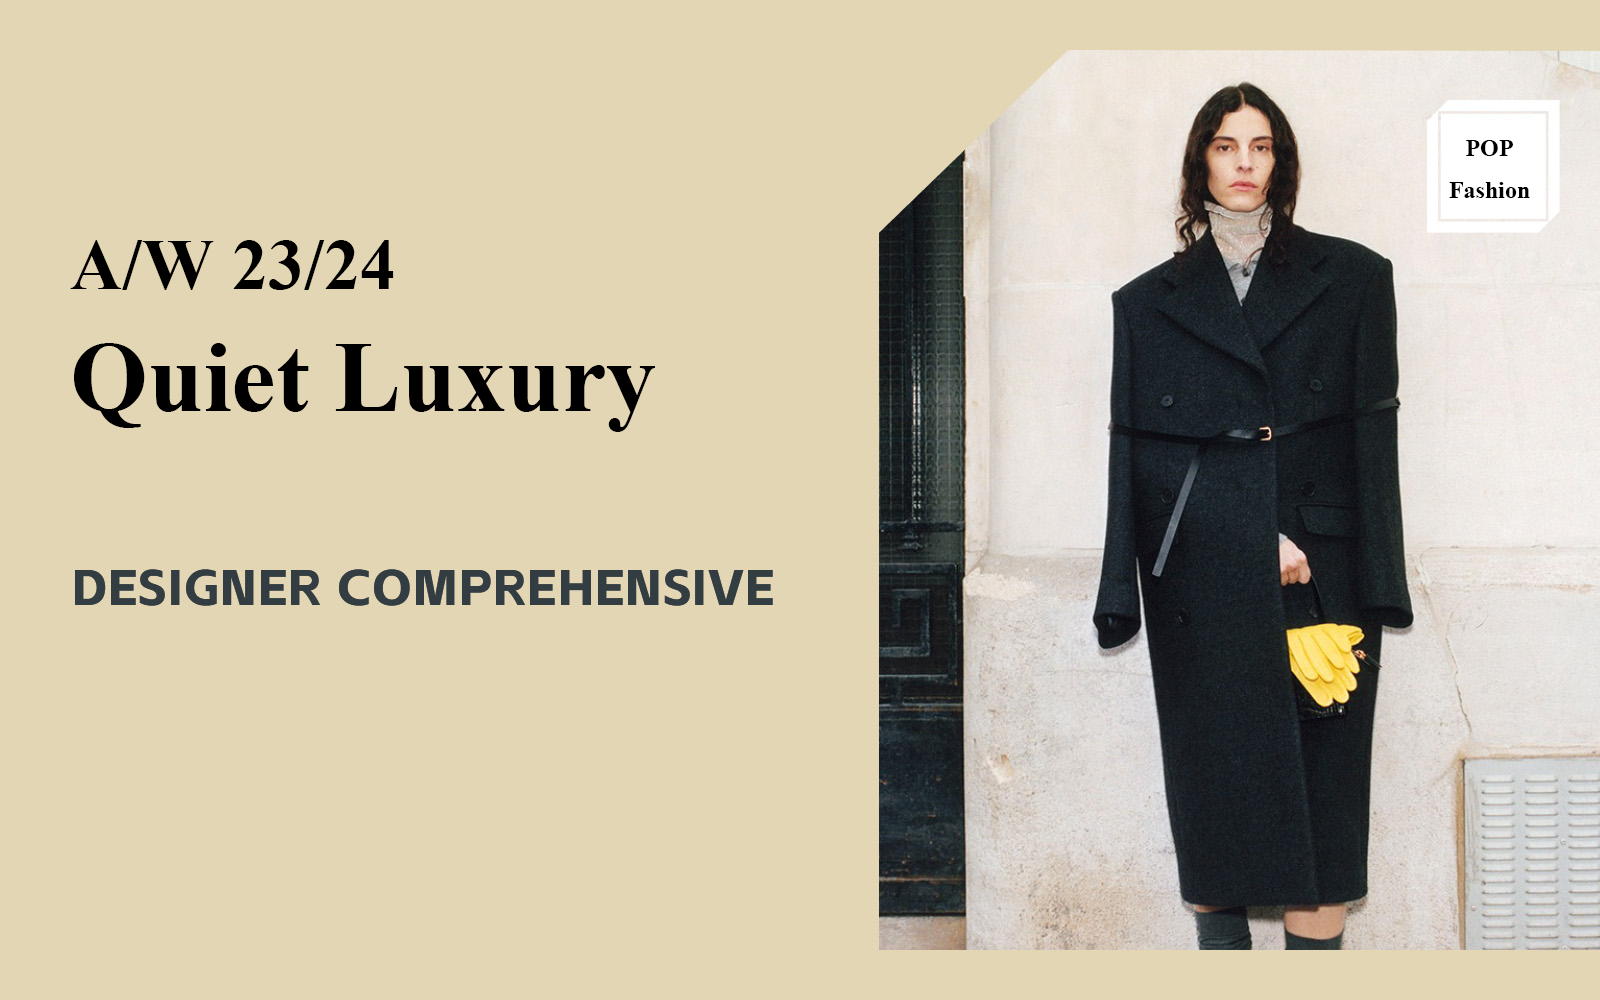 Quiet Luxury -- The Comprehensive Analysis of Womenswear Designer Brand